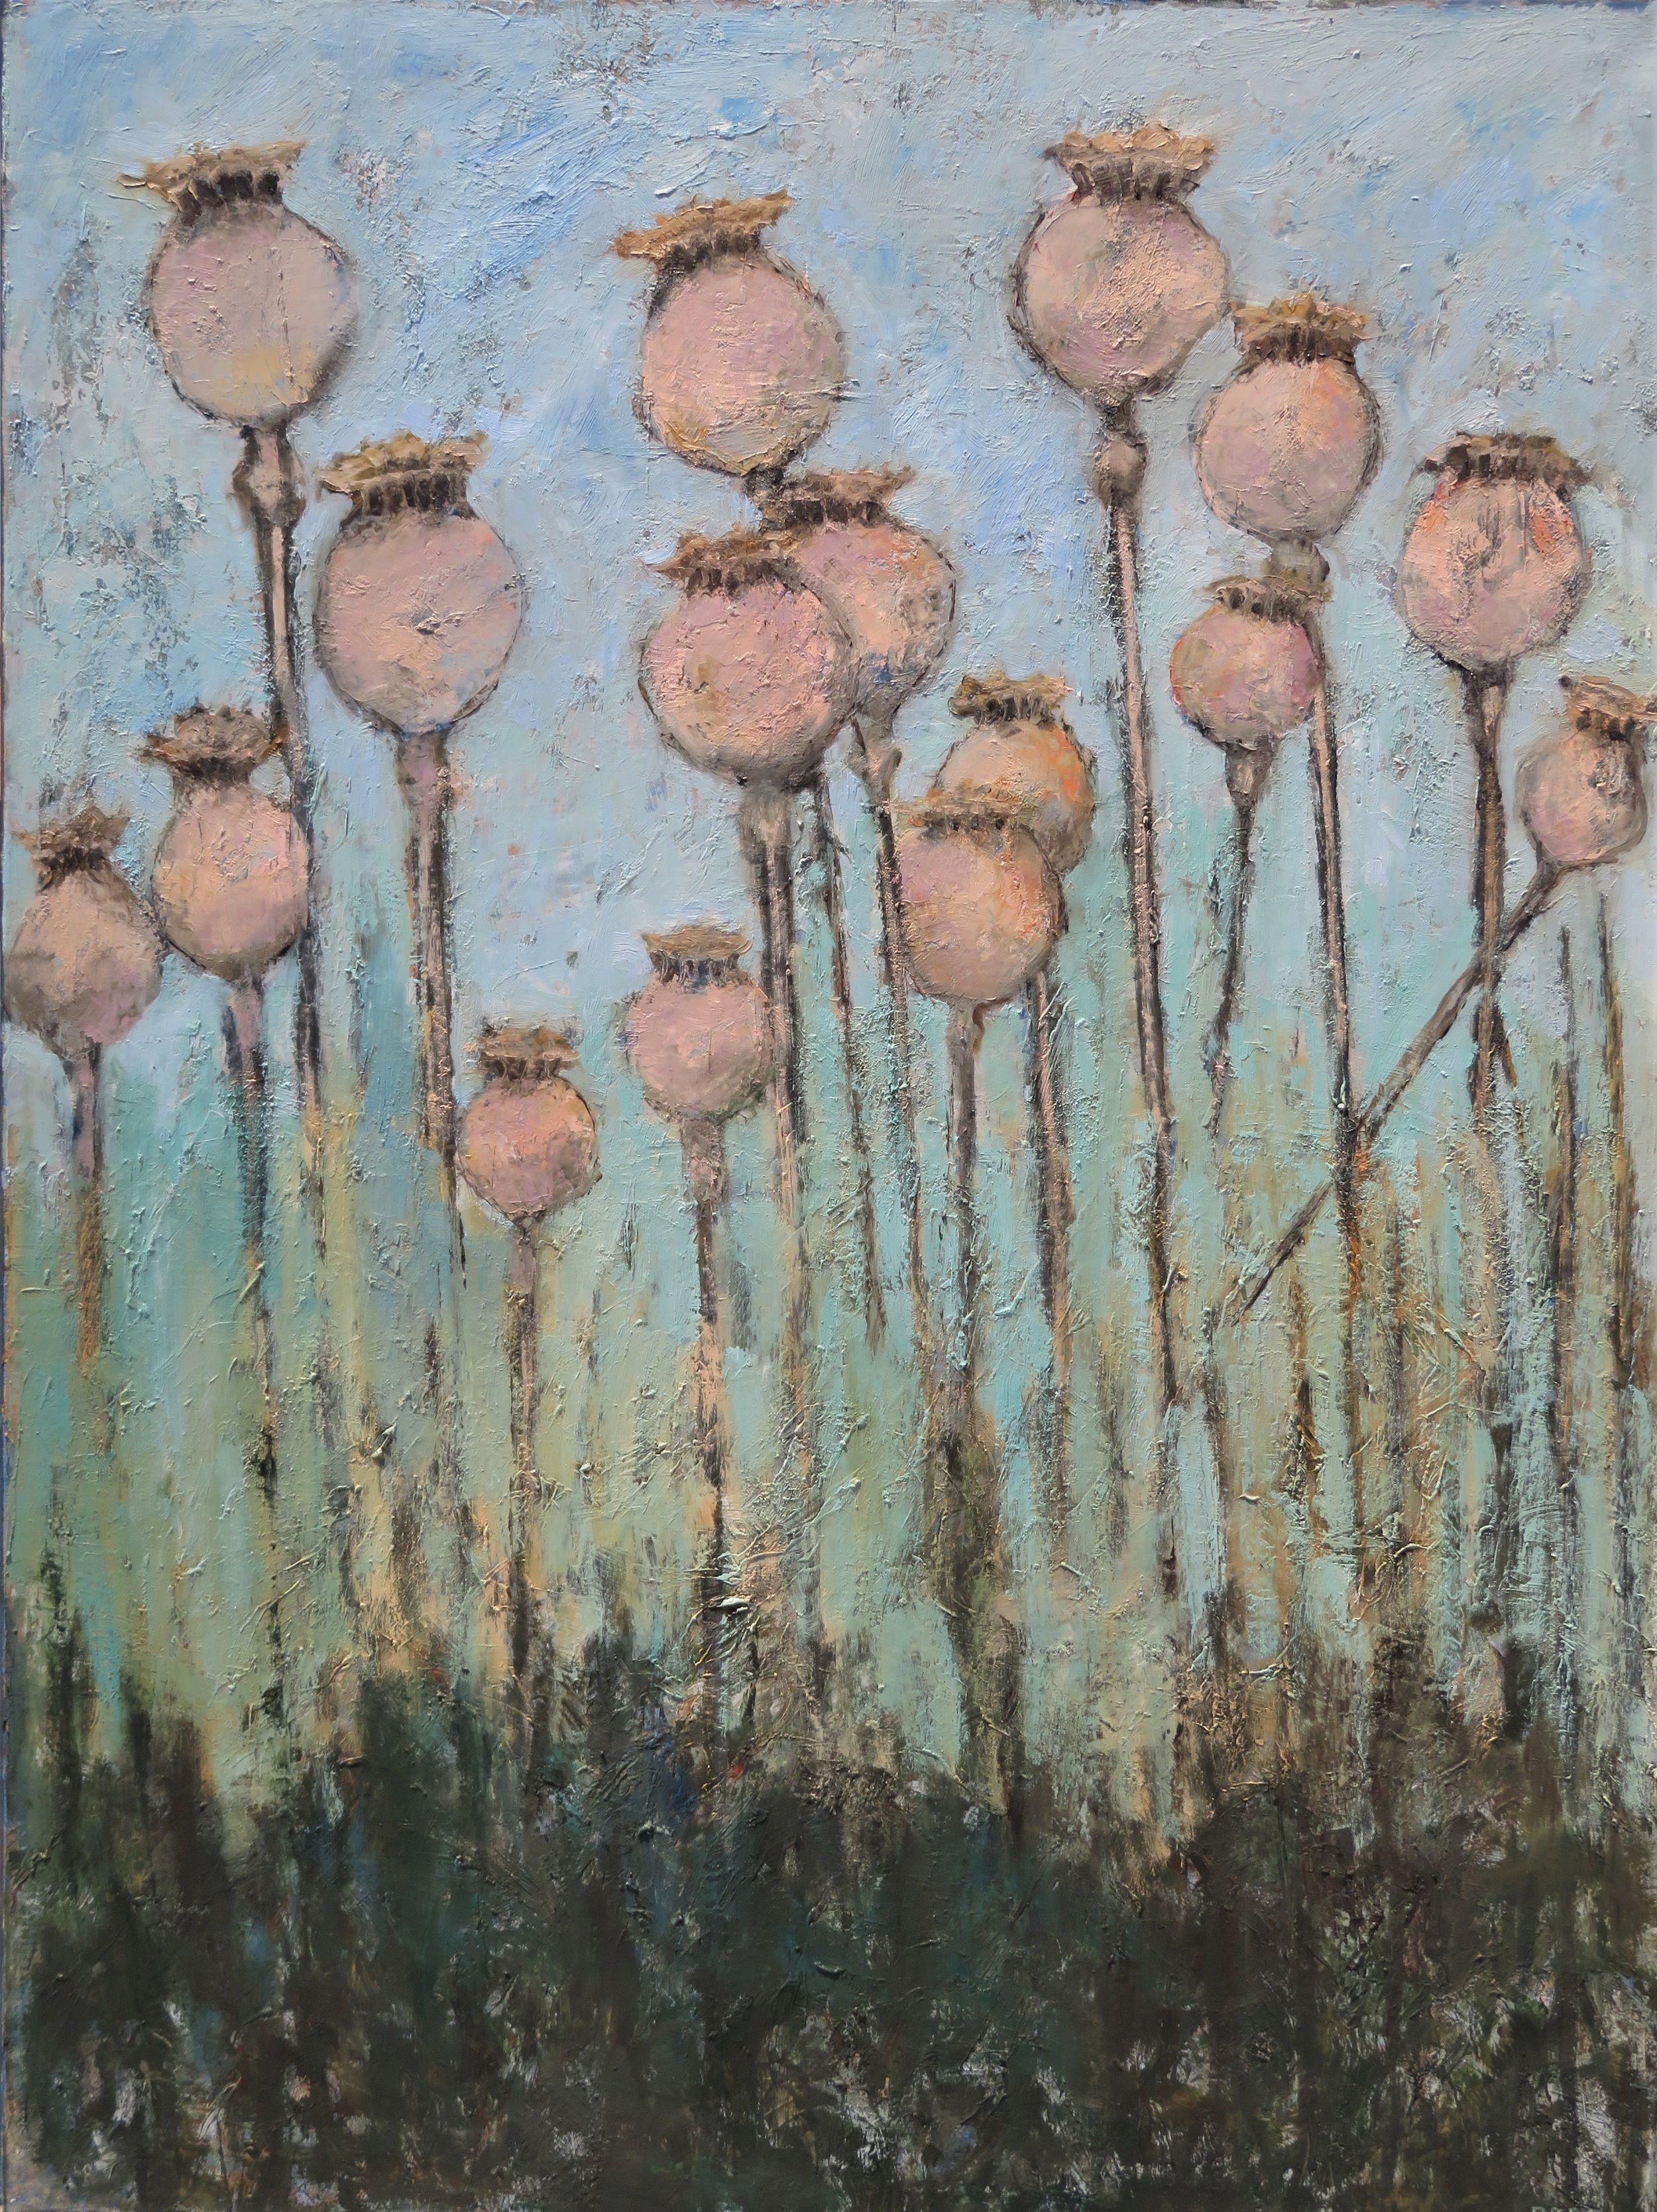 Têtes de graines de coquelicot, peinture, huile sur toile - Painting de Stephanie Berry